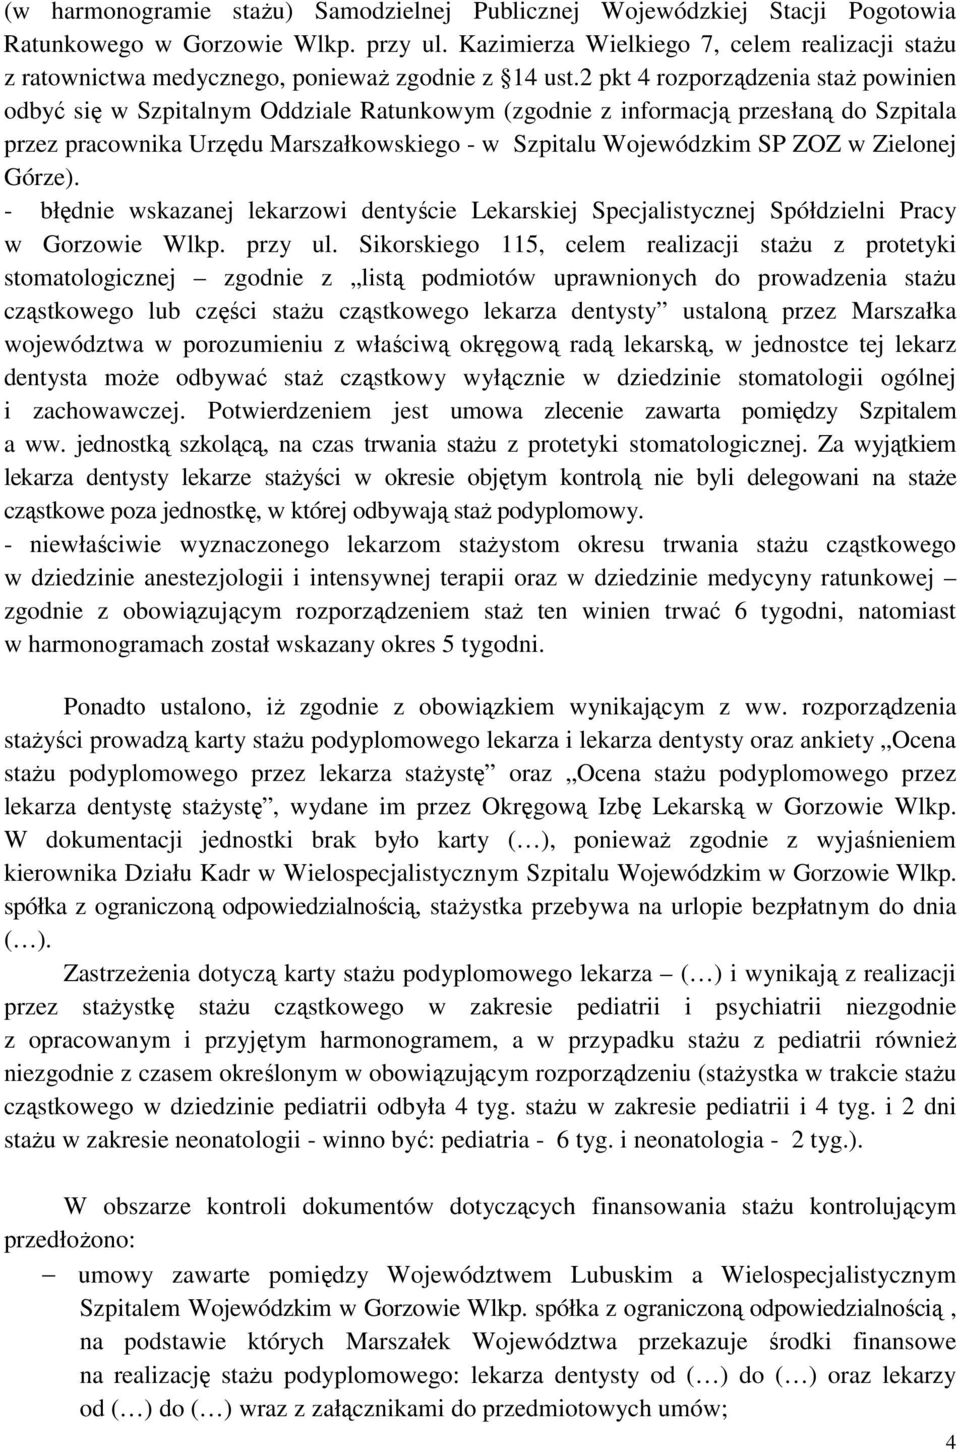 2 pkt 4 rozporządzenia staż powinien odbyć się w Szpitalnym Oddziale Ratunkowym (zgodnie z informacją przesłaną do Szpitala przez pracownika Urzędu Marszałkowskiego - w Szpitalu Wojewódzkim SP ZOZ w